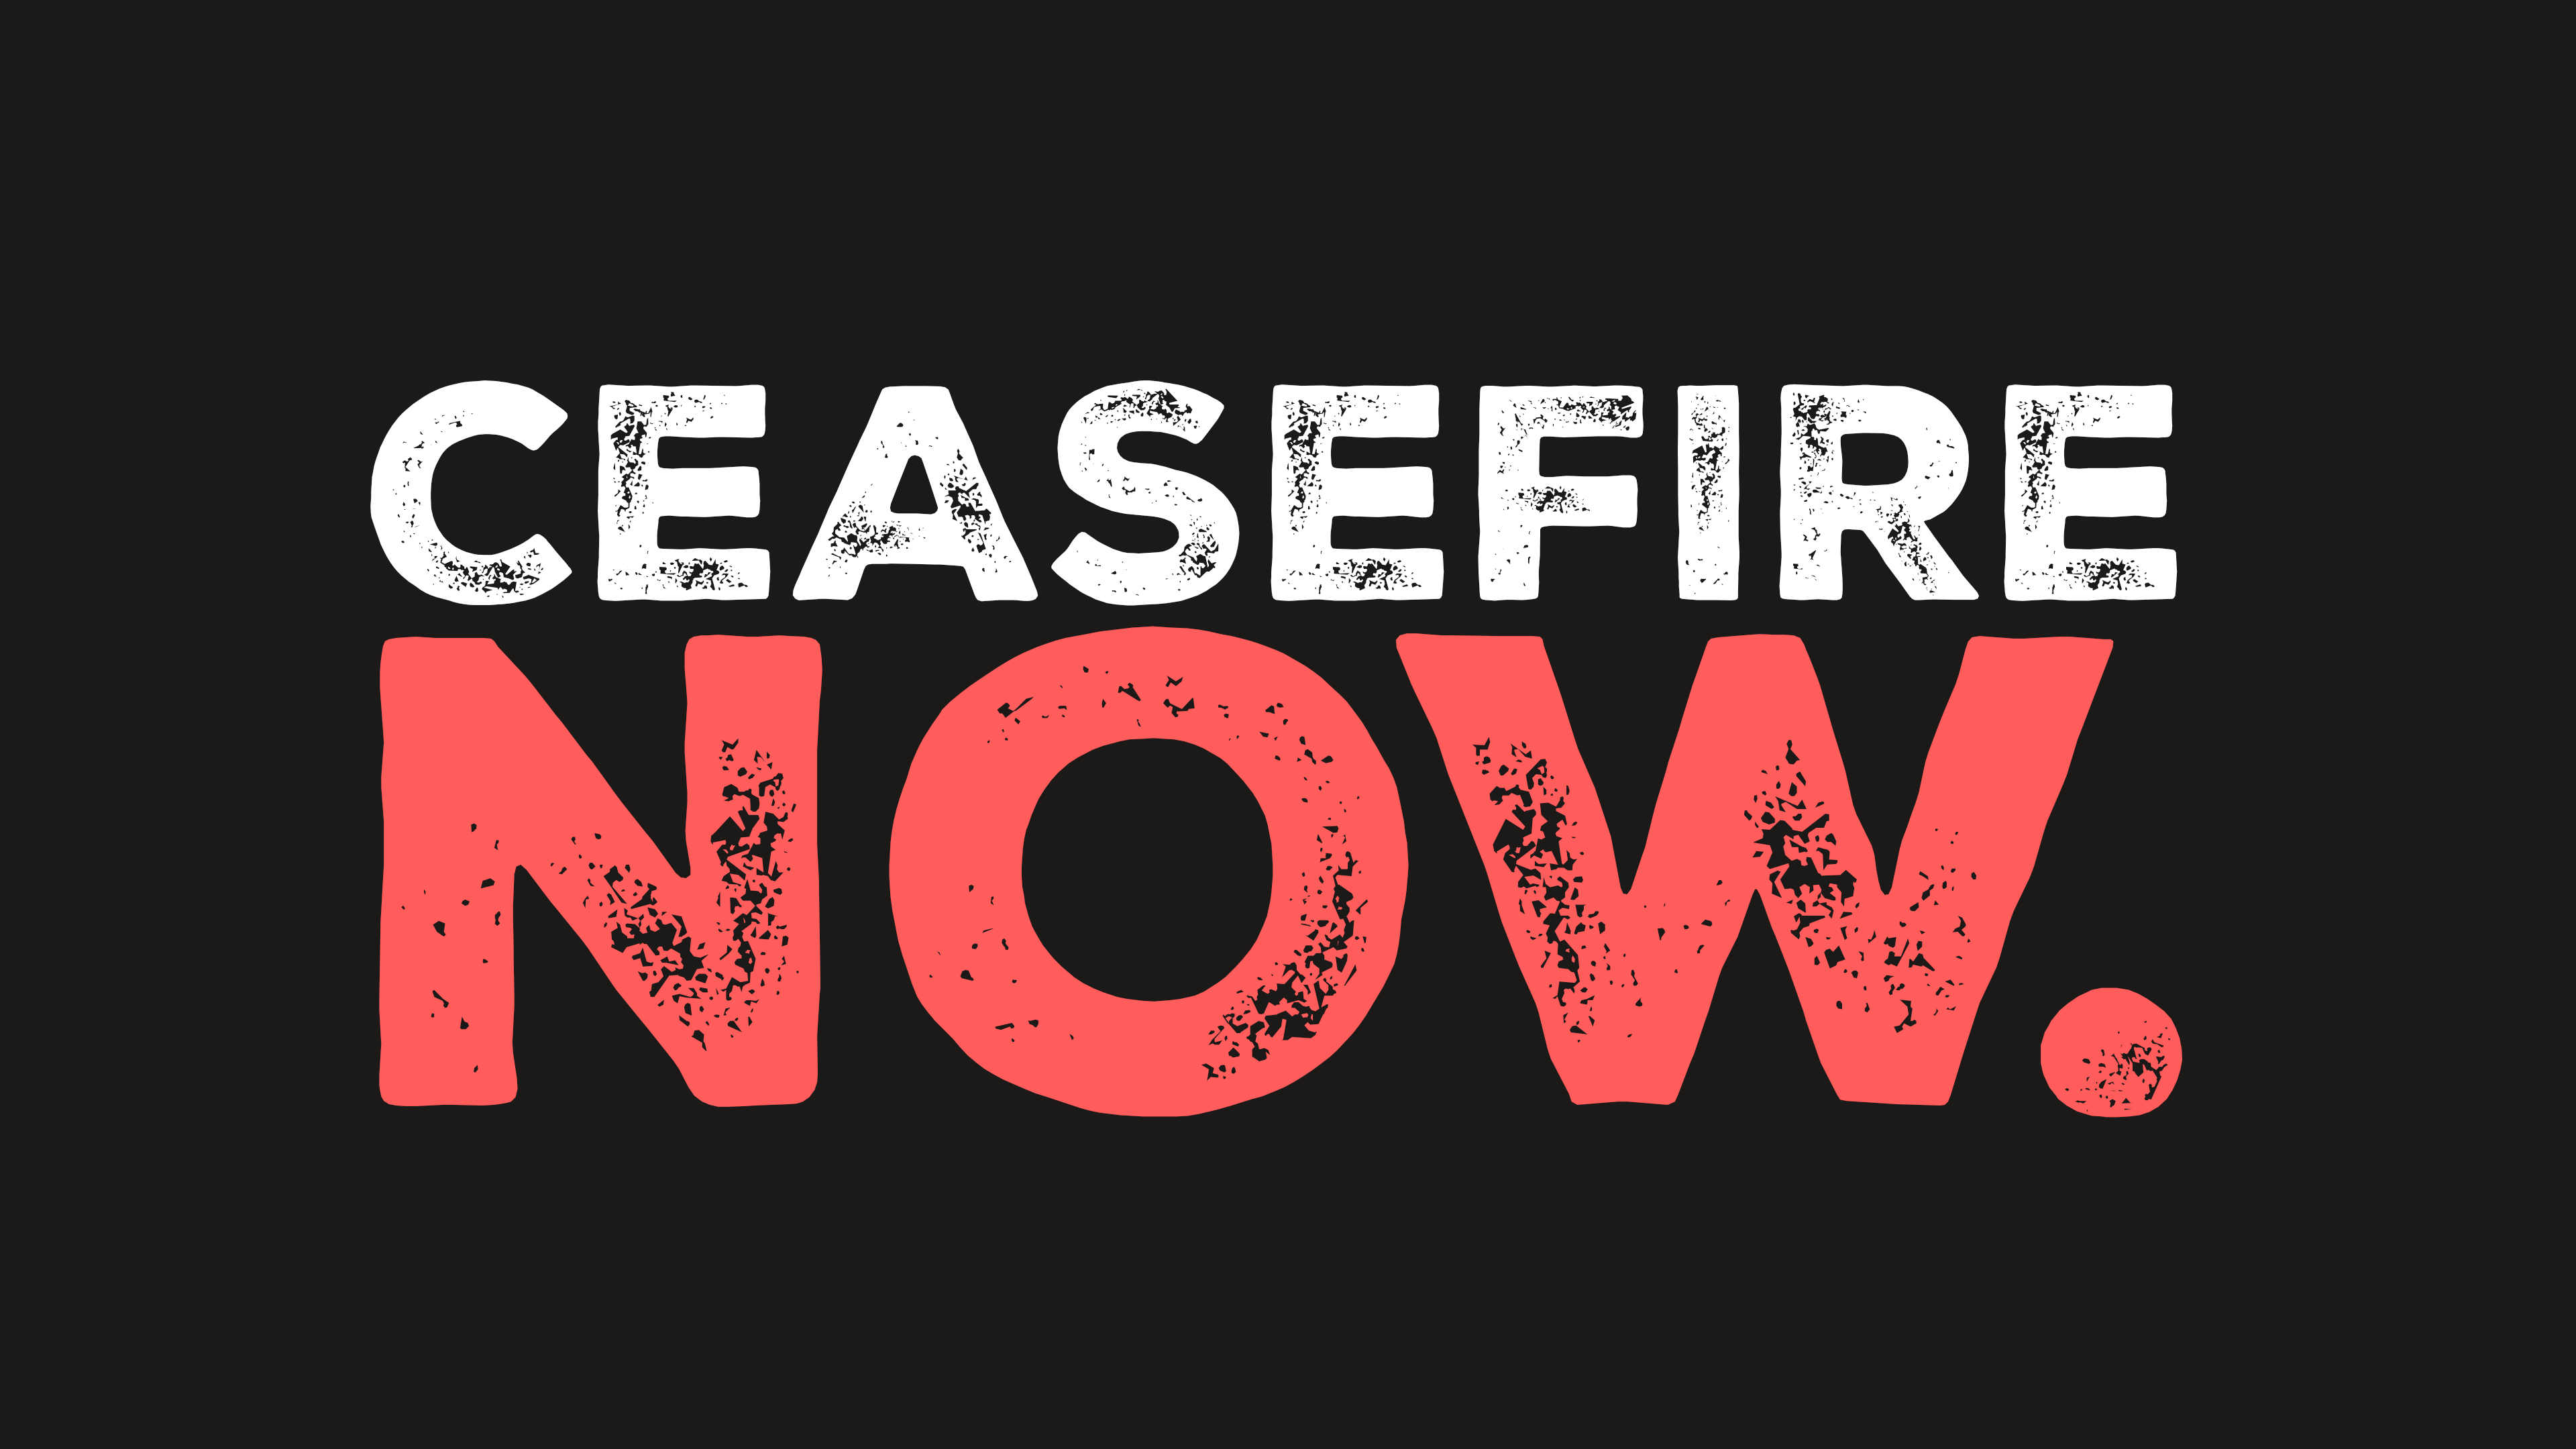 #CeasefireNow musta kampanja-banneri valko-punaisella tekstillä.